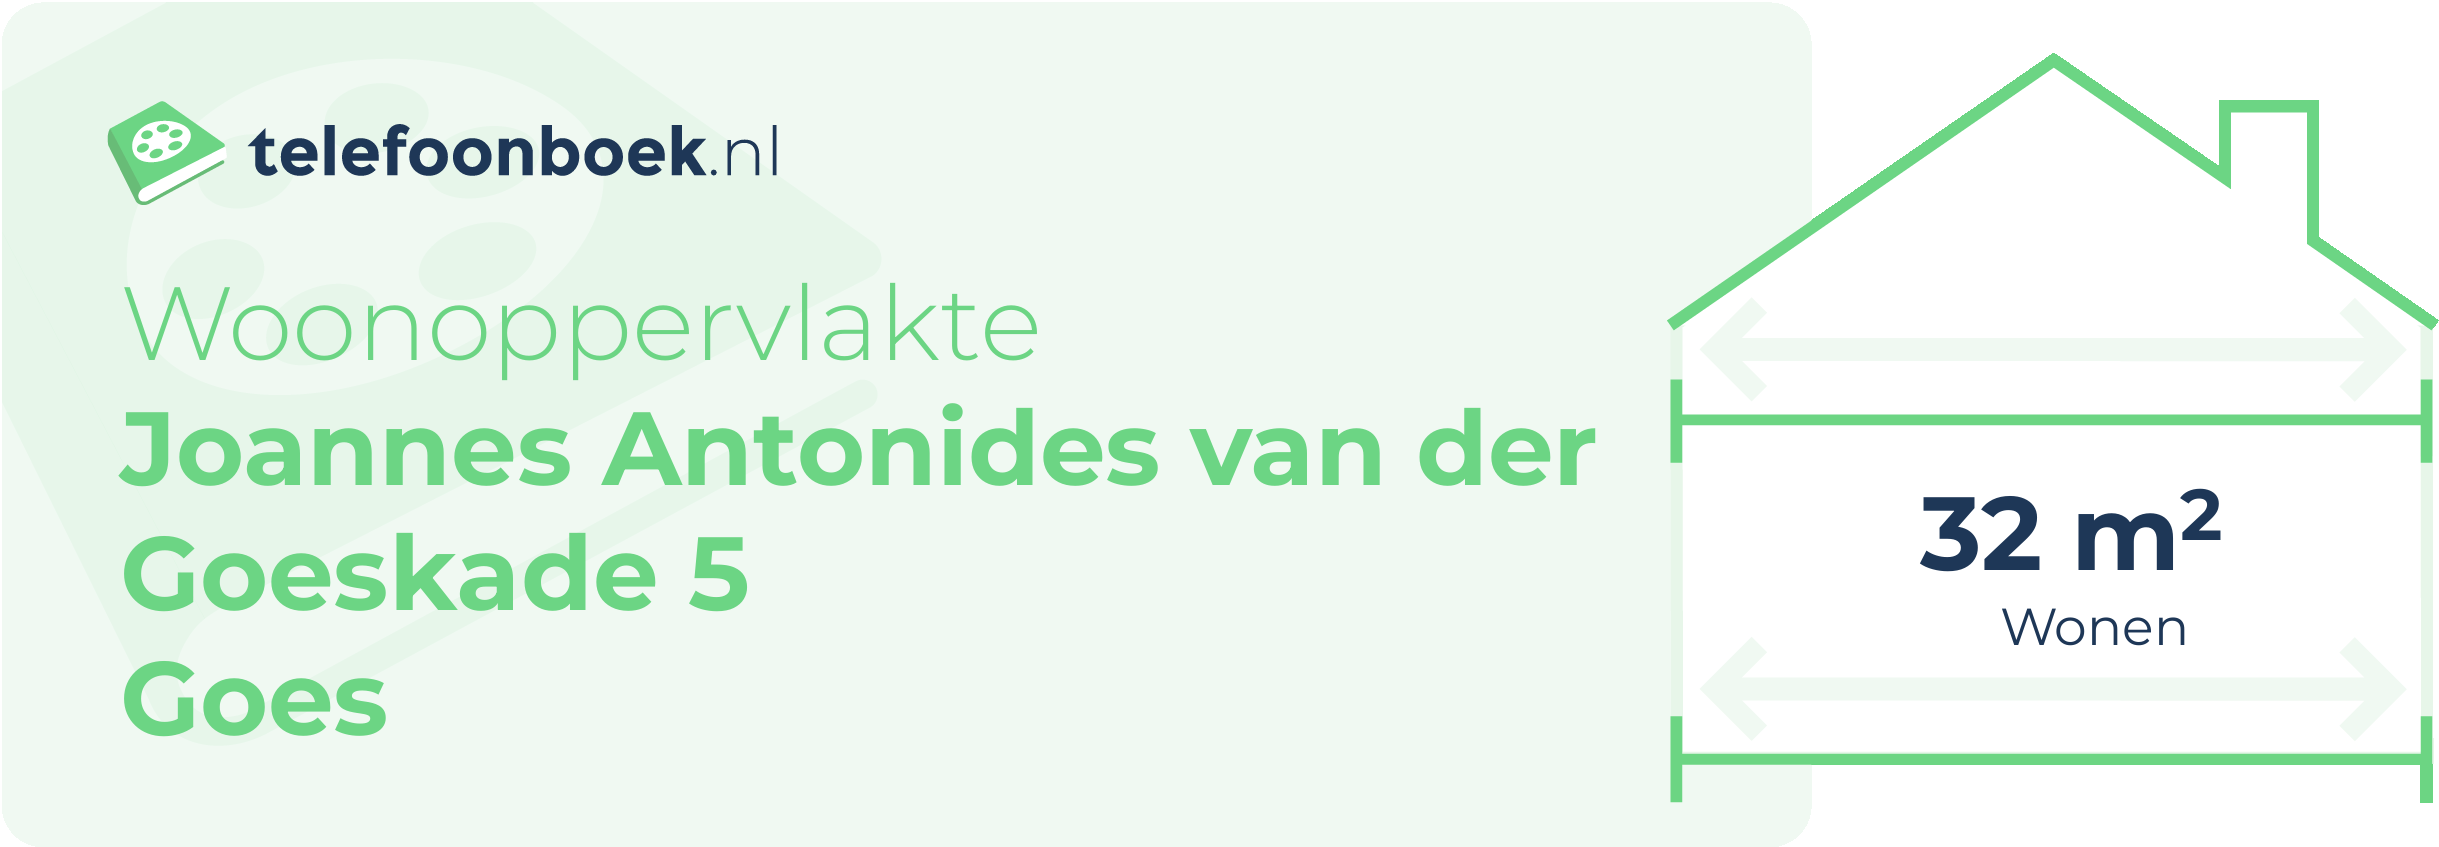 Woonoppervlakte Joannes Antonides Van Der Goeskade 5 Goes